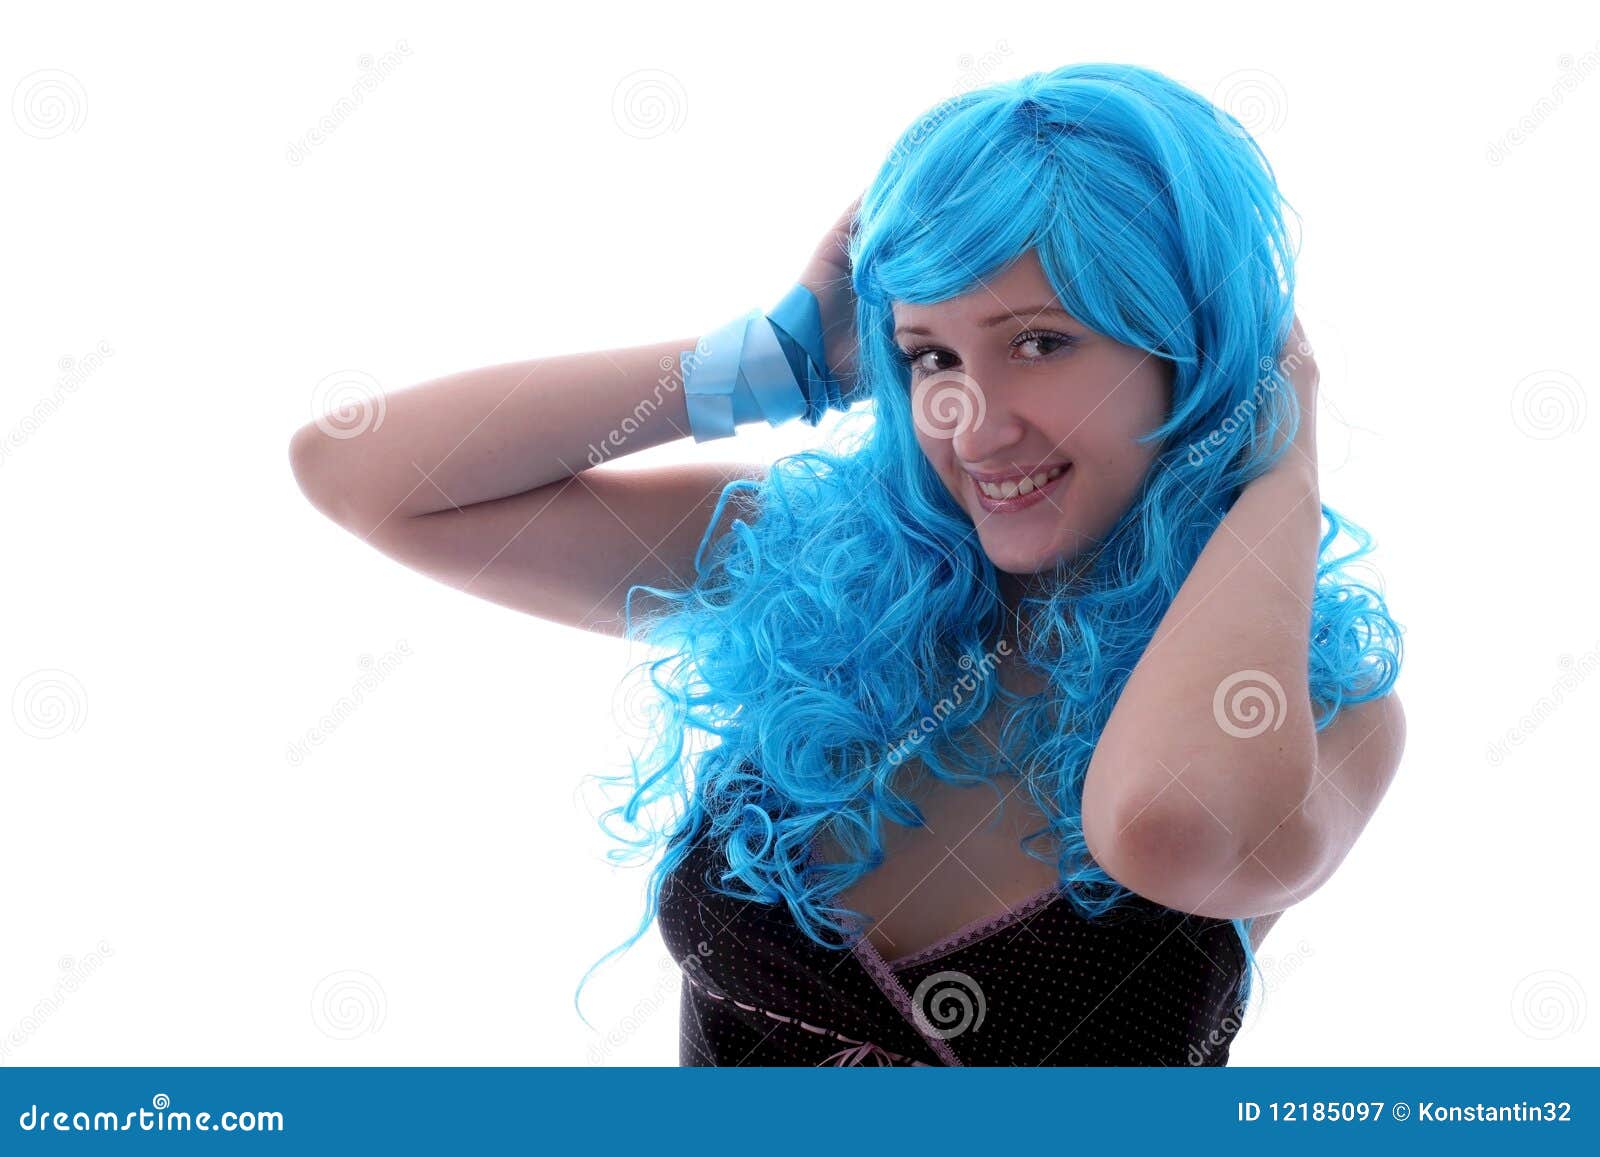 Dancing Blue Hair - wide 9